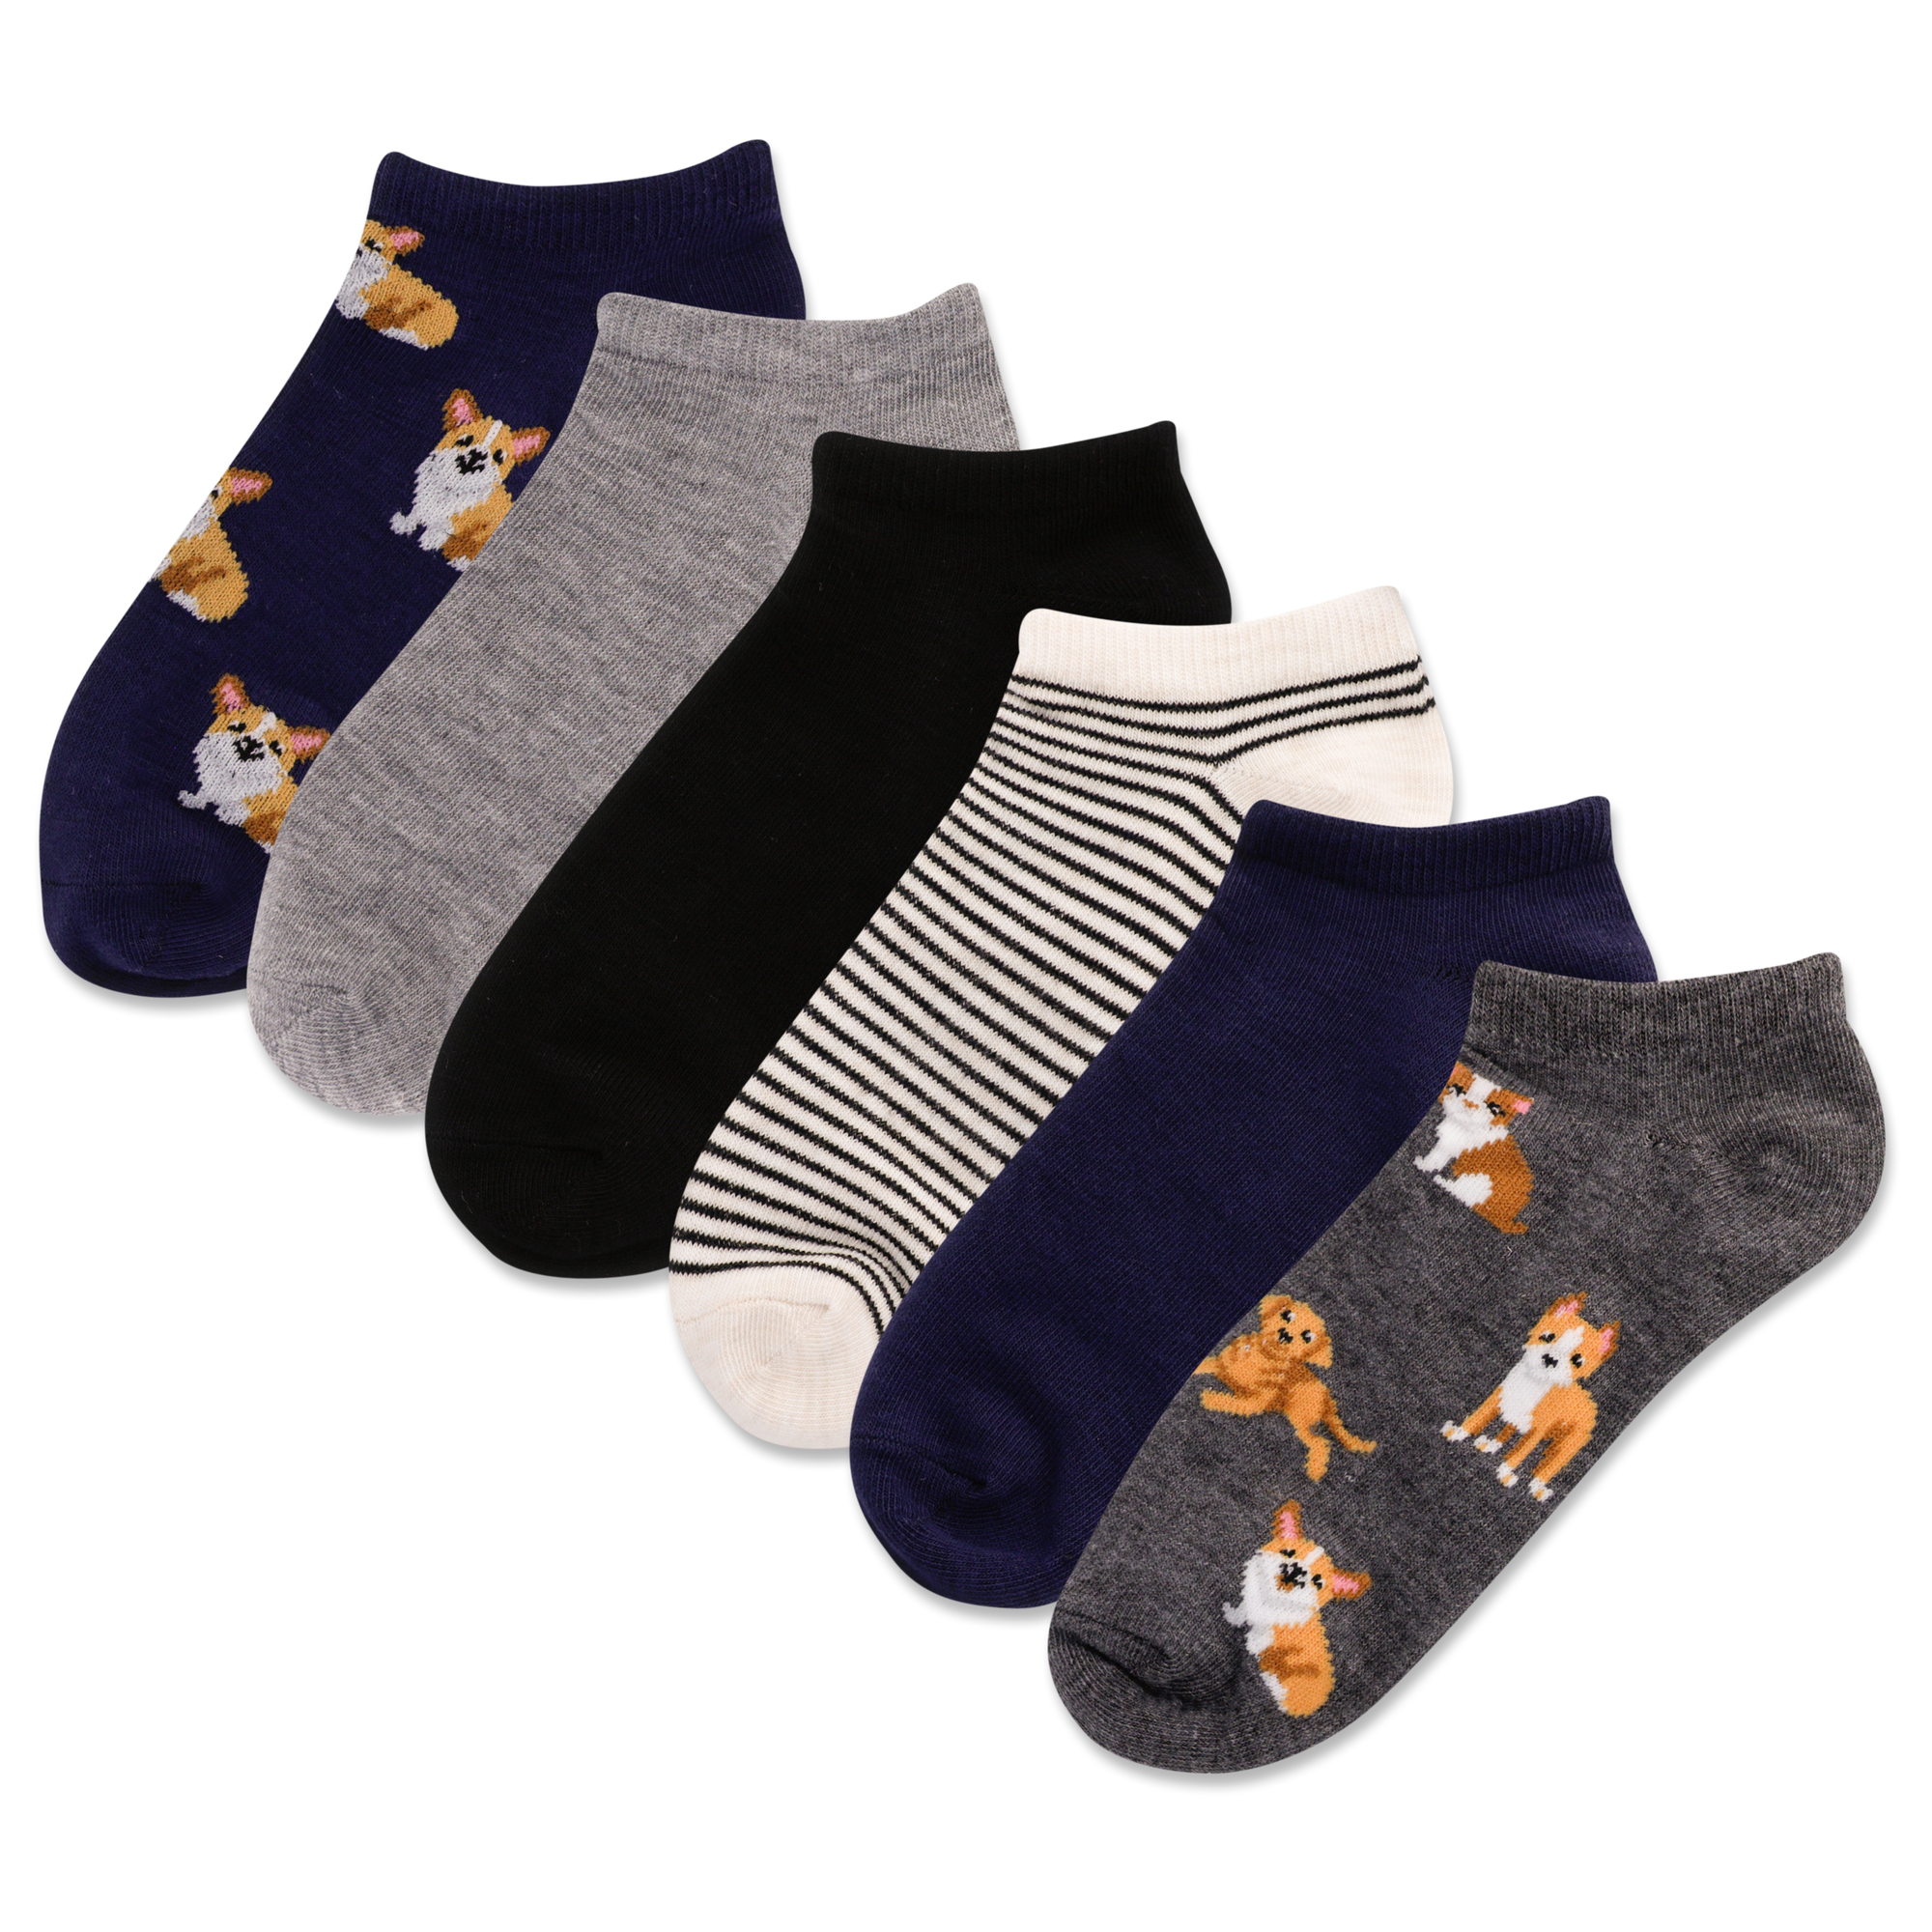 HOTSOX Women's Dogs 6 Pack Low Cut Socks